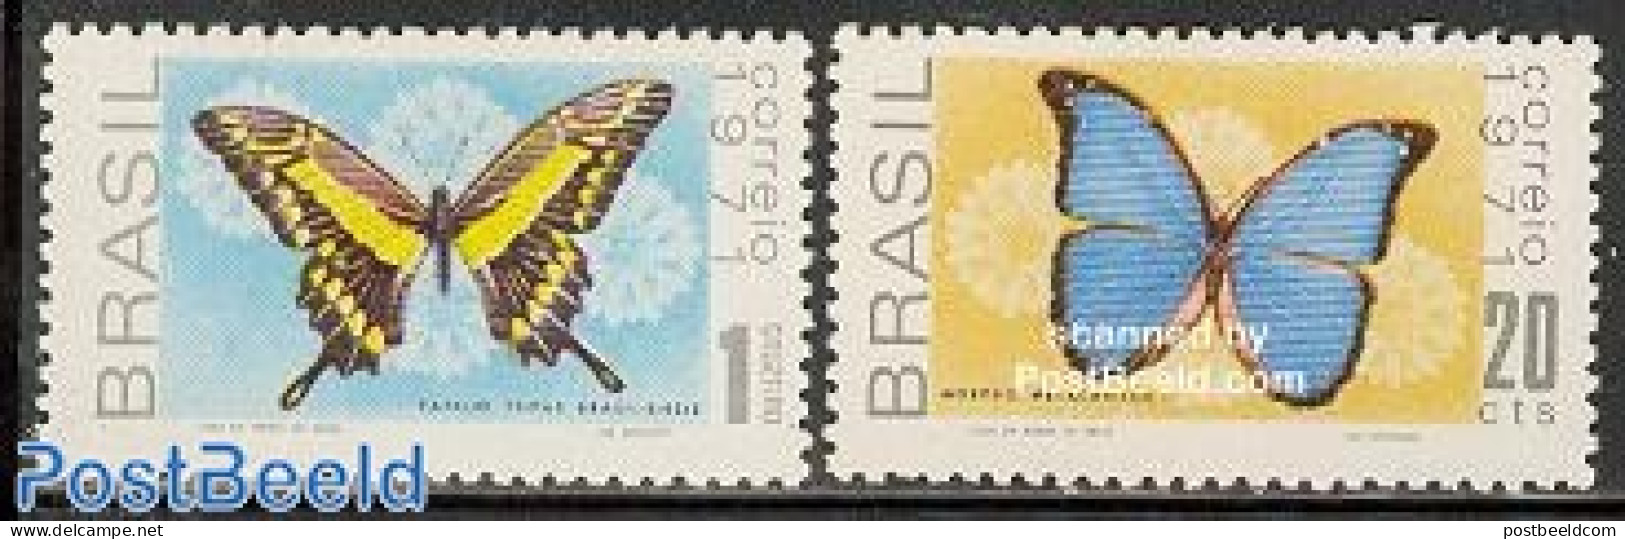 Brazil 1971 Butterflies 2v, Mint NH, Nature - Butterflies - Ungebraucht